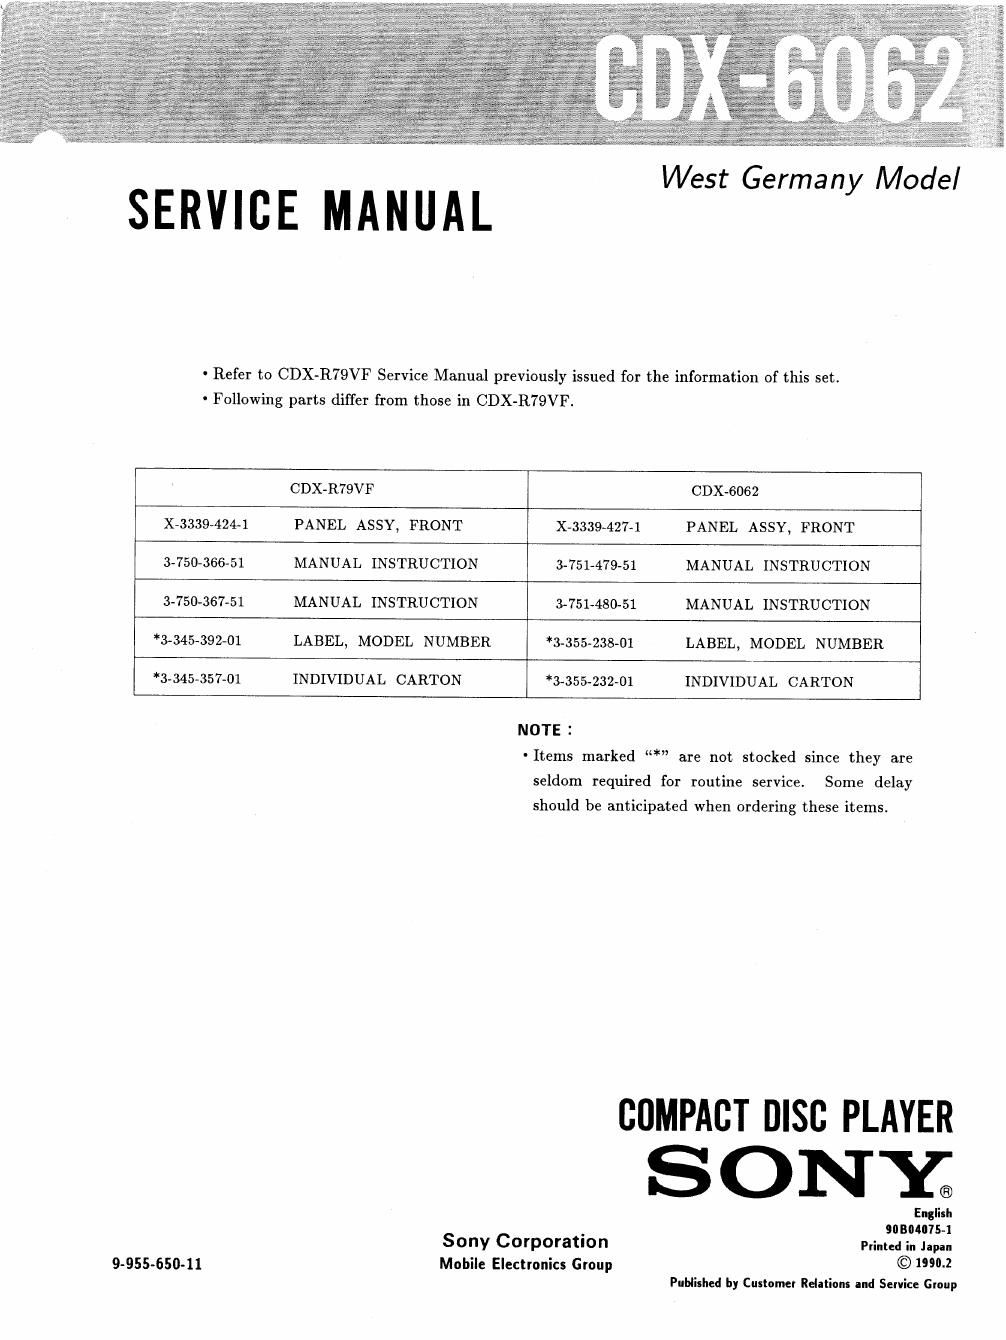 sony cdx 6062 service manual